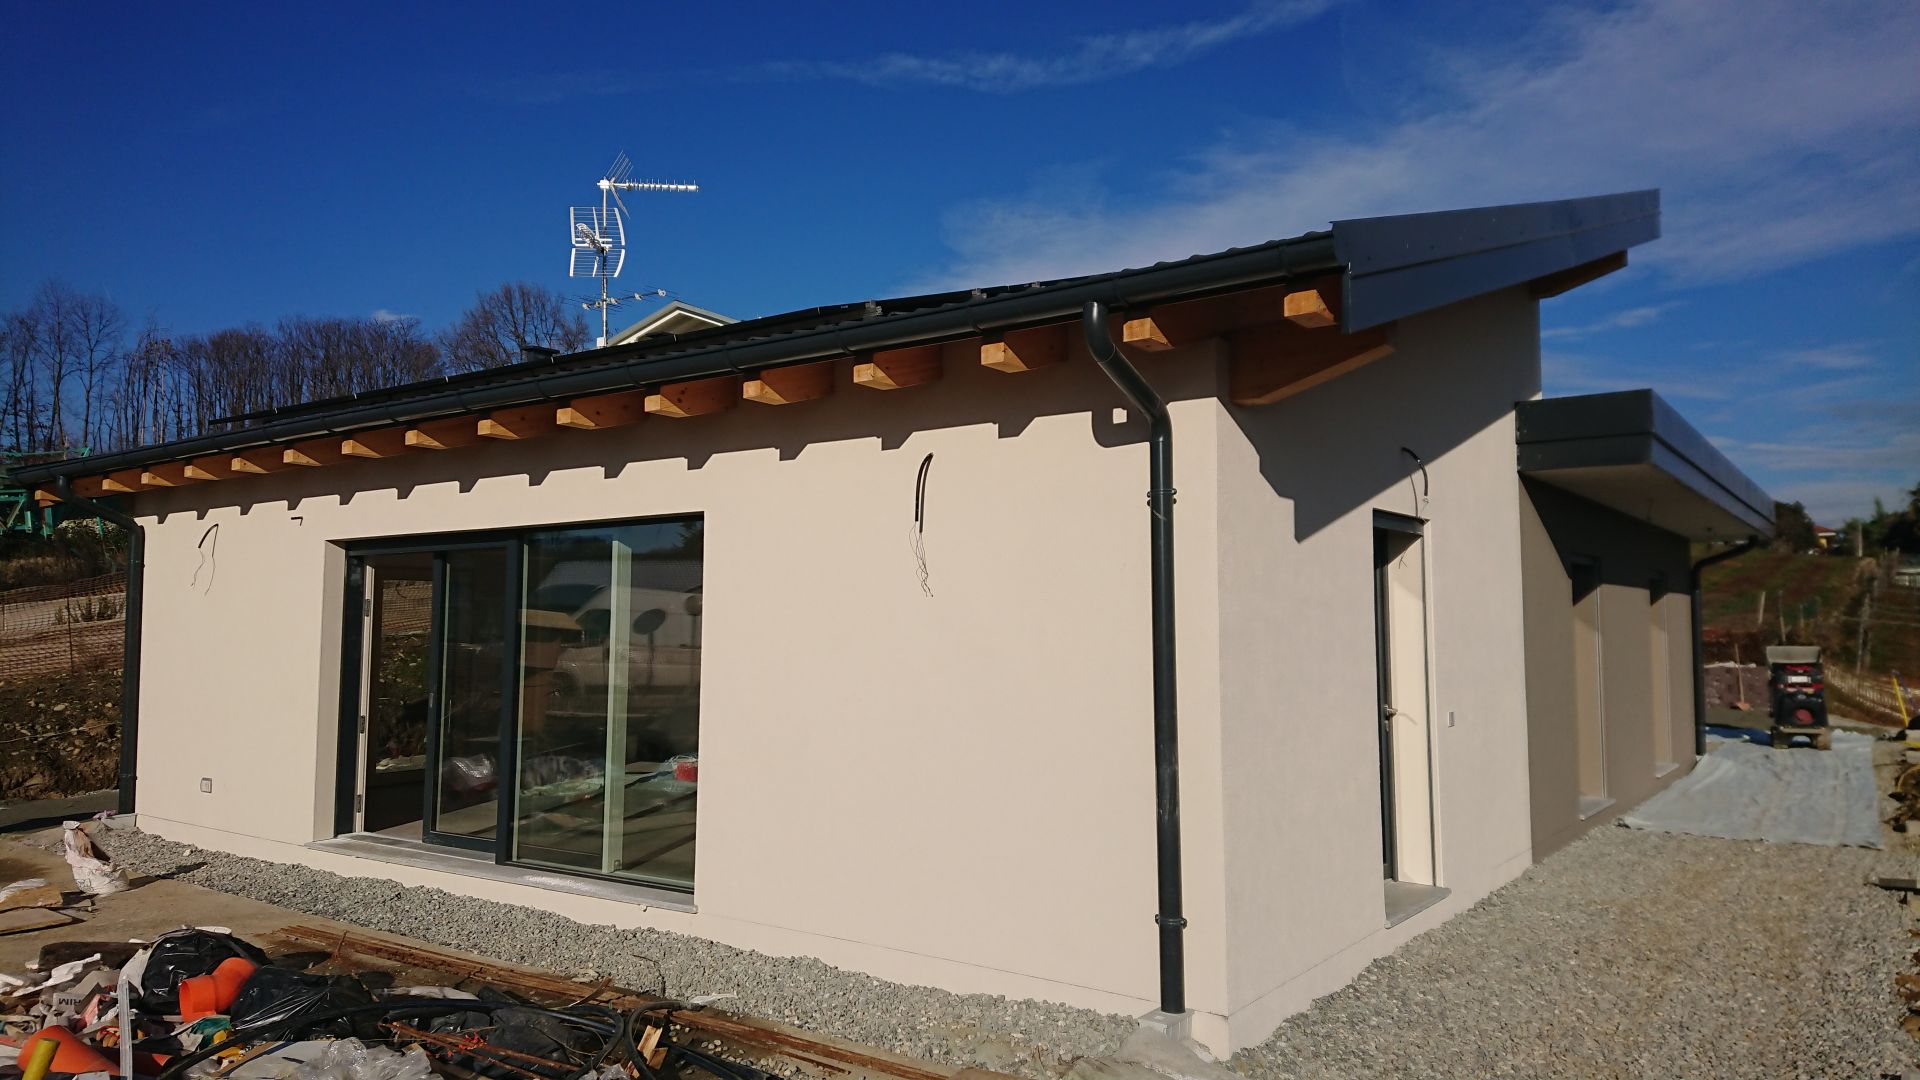 Villa unifamiliare con garage e piscina a Cavaglià (BI) realizzato da Lino Ferro Architetto, Assistenza tecnica a Oleggio